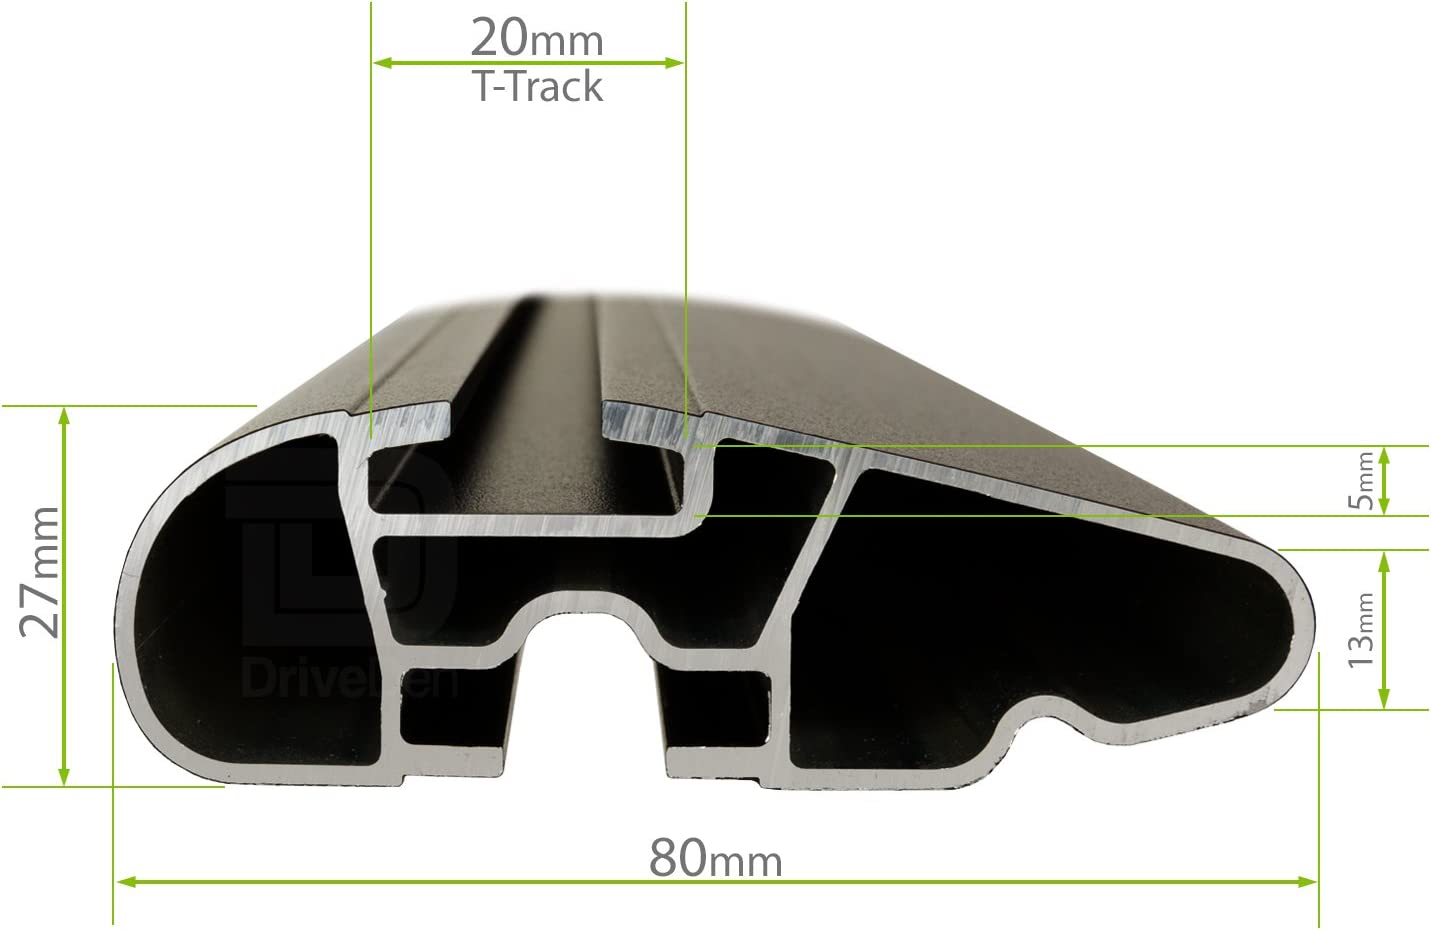 Barre portapacchi da abbinare al kit Lux PR4 e Kit link per Citroen C4 Aircross 5 porte anno 2012> (senza corrimano)